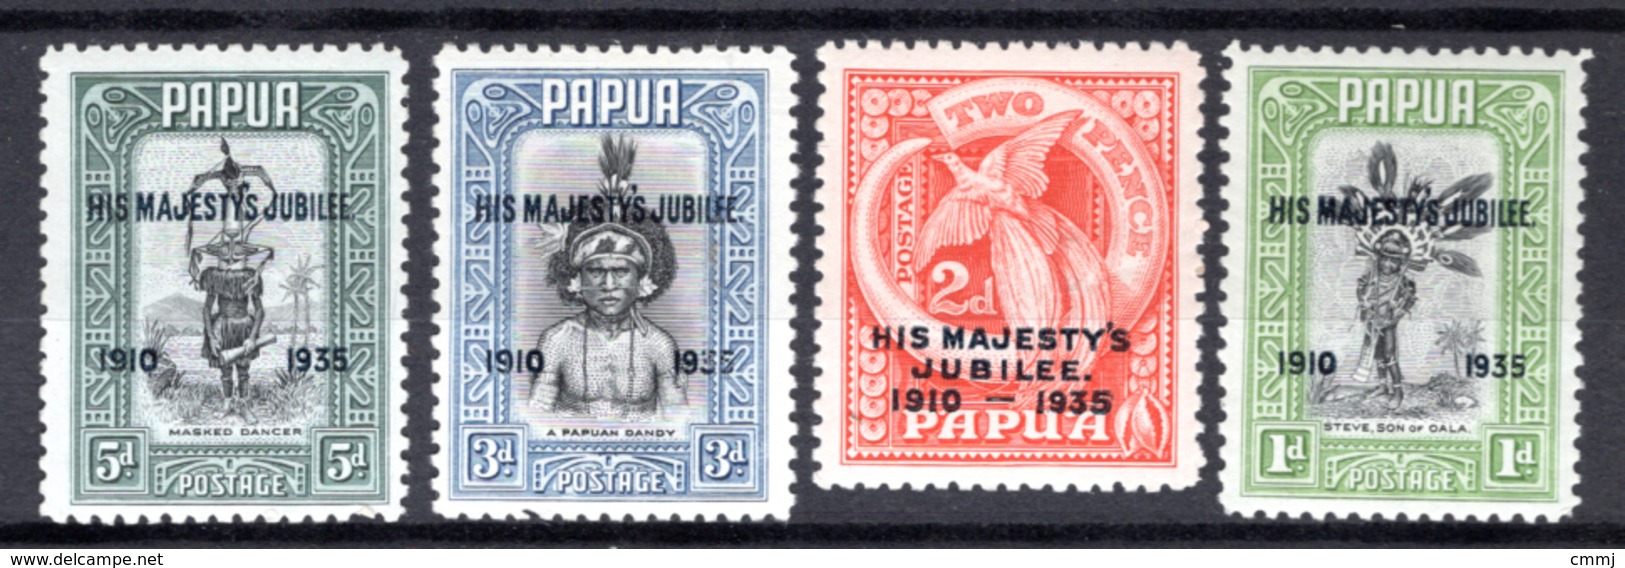 1935 - PAPUA - Mi. Nr.  99/102 -  LH  - (K-EA-361388.5) - Papua-Neuguinea